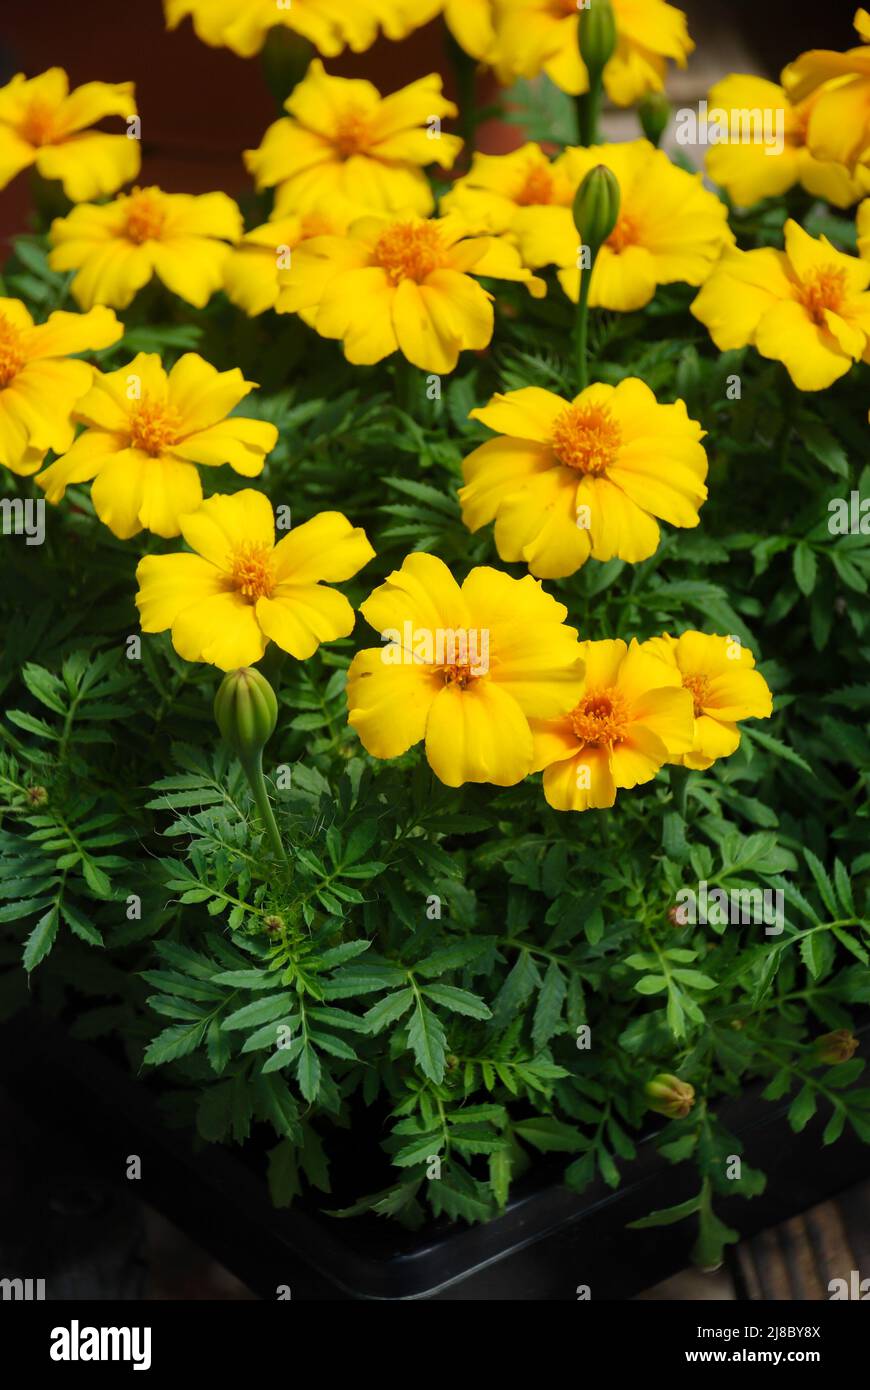 Tagetes patula marigold francese in fiore, fiori giallo arancio, foglie verdi, pentola pianta Foto Stock